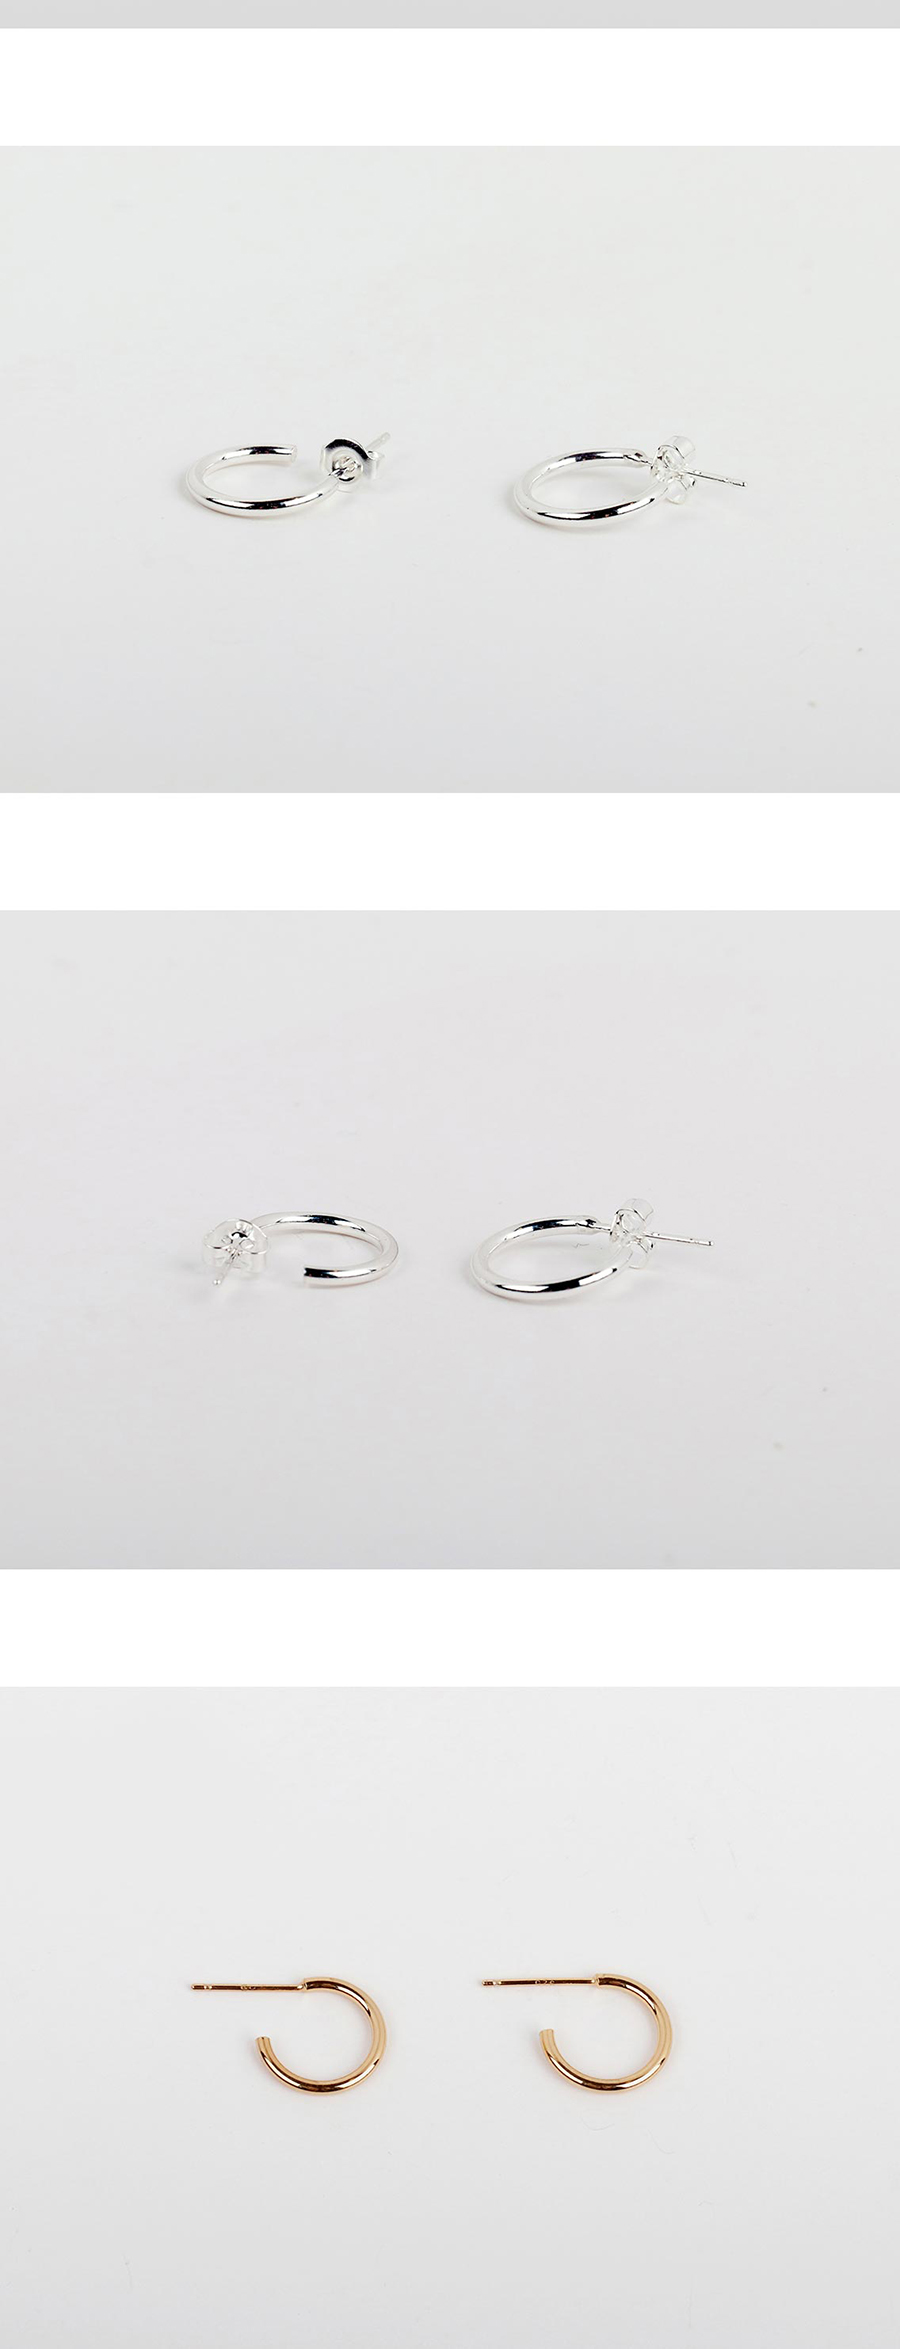 2컬러 silver open ring earring 25,000원 - 레스이즈모어 이동요망, X주얼리/시계, 귀걸이, 실버 바보사랑 2컬러 silver open ring earring 25,000원 - 레스이즈모어 이동요망, X주얼리/시계, 귀걸이, 실버 바보사랑